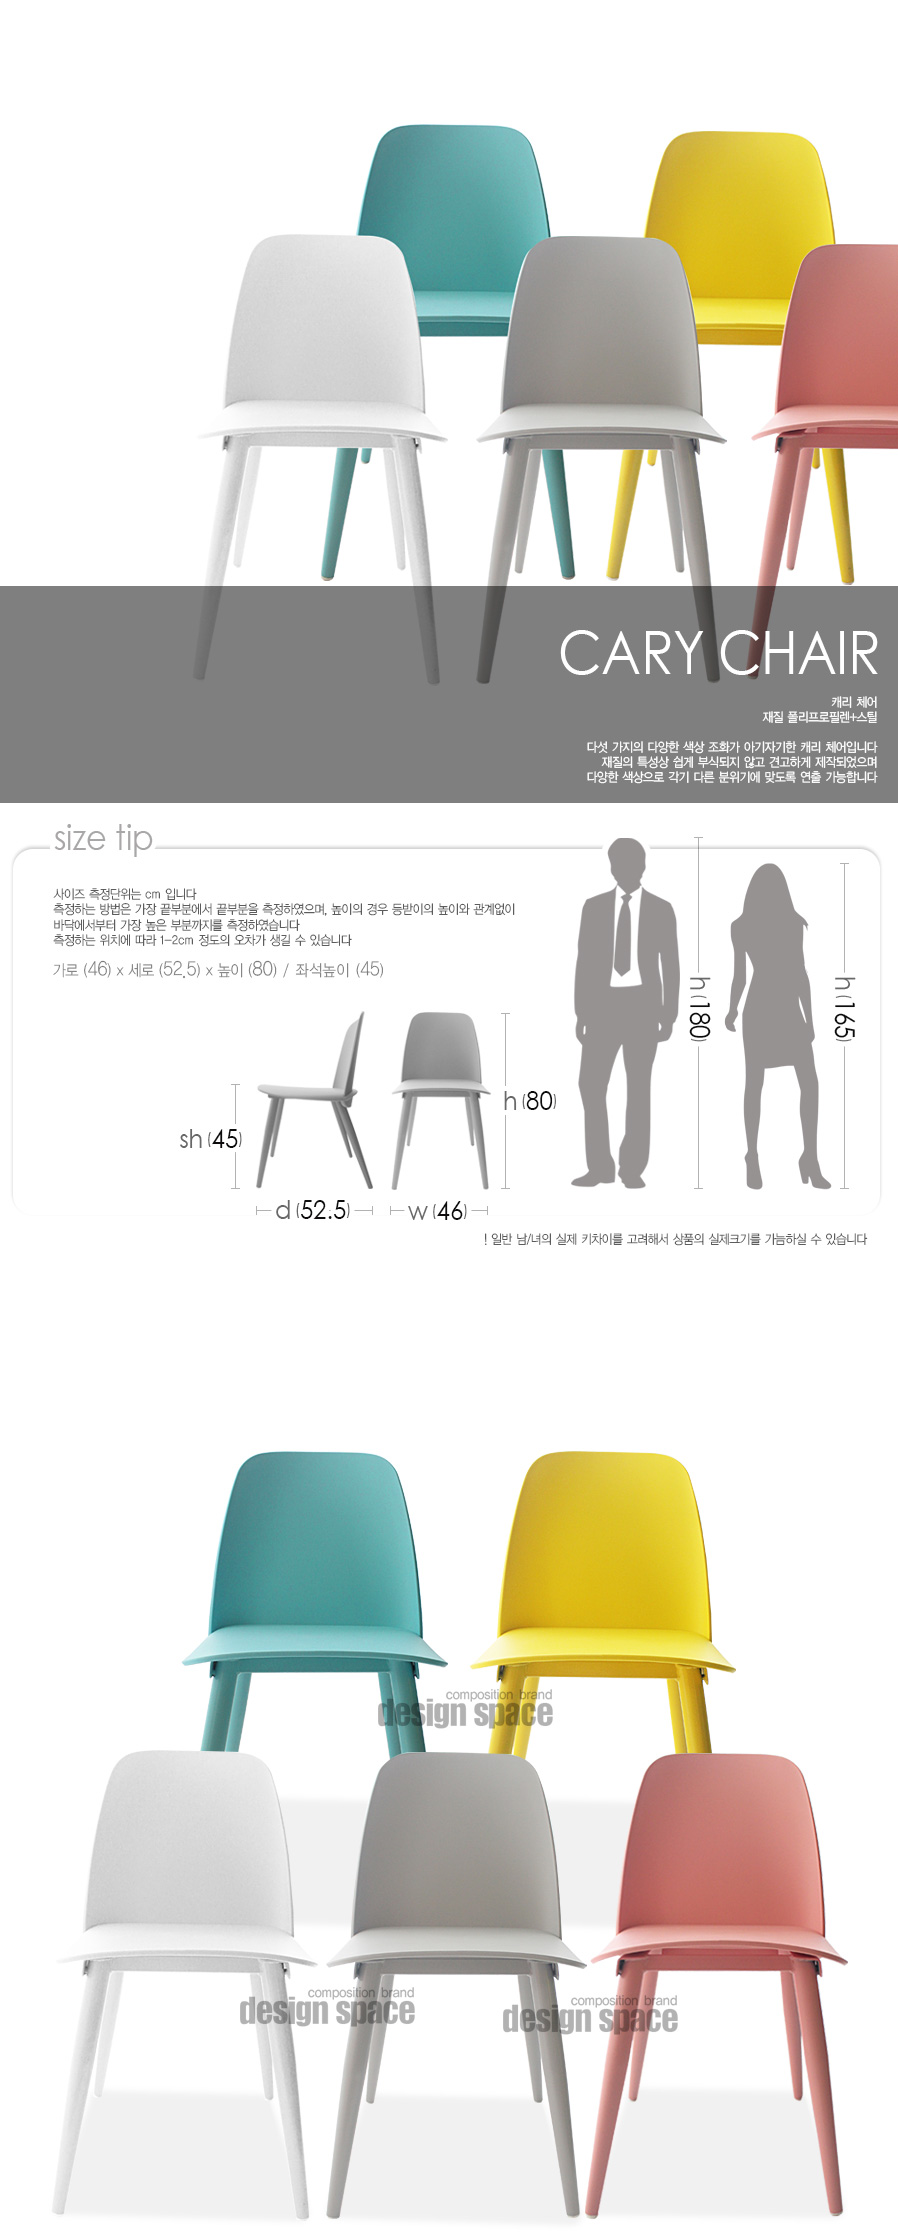 cary-chair_01.jpg